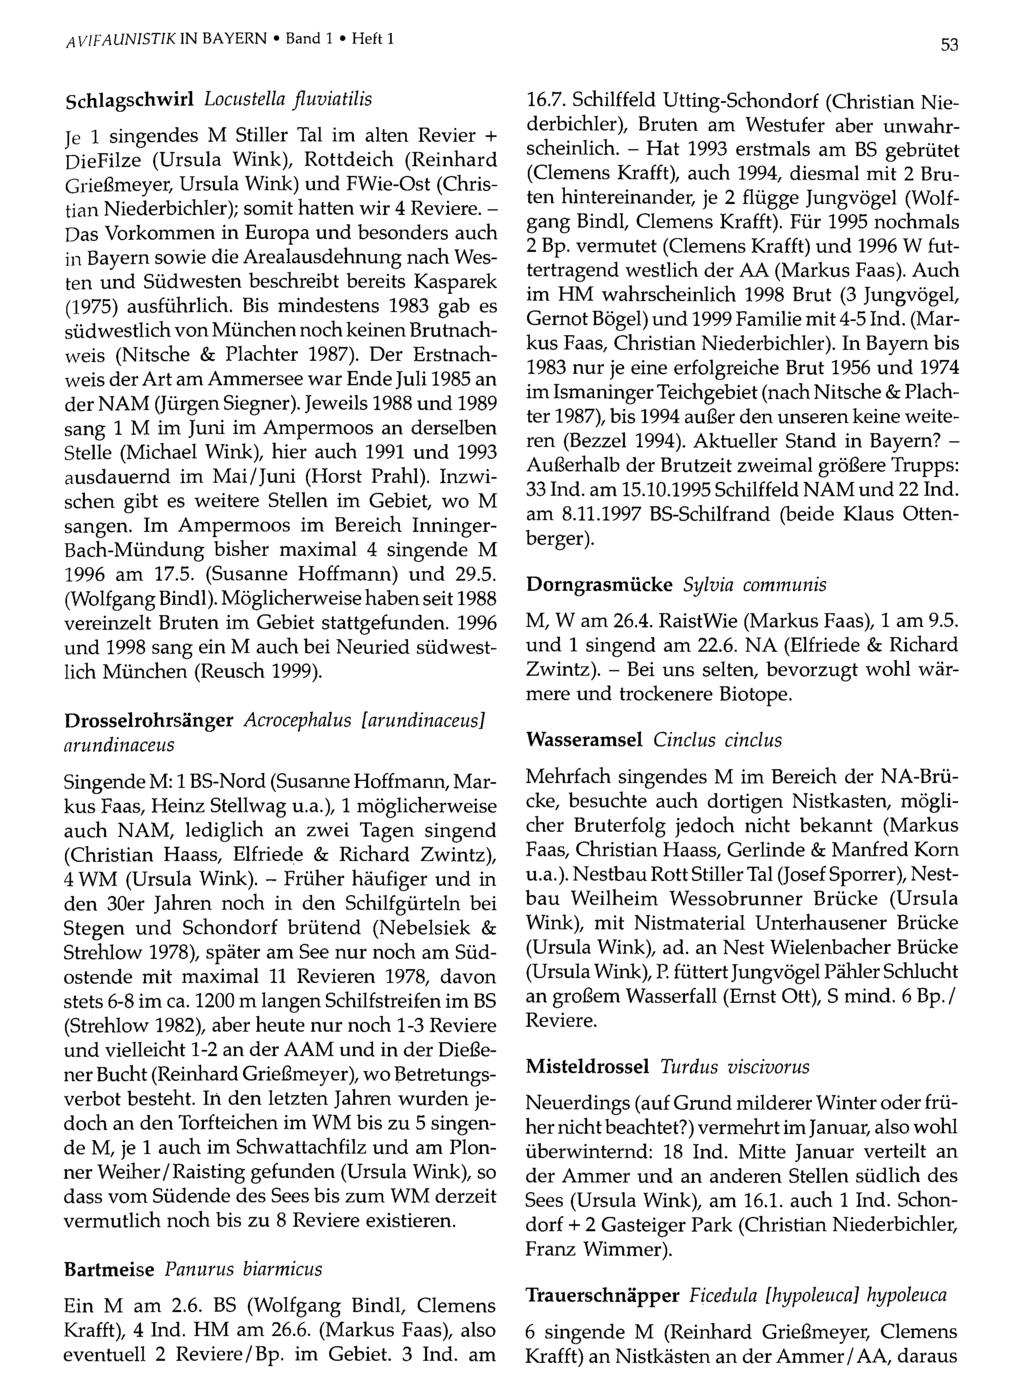 AV1FAUN1STIK IN BAYERN Band Ornithologische 1 Heft 1Gesellschaft Bayern, download unter www.biologiezentrum.